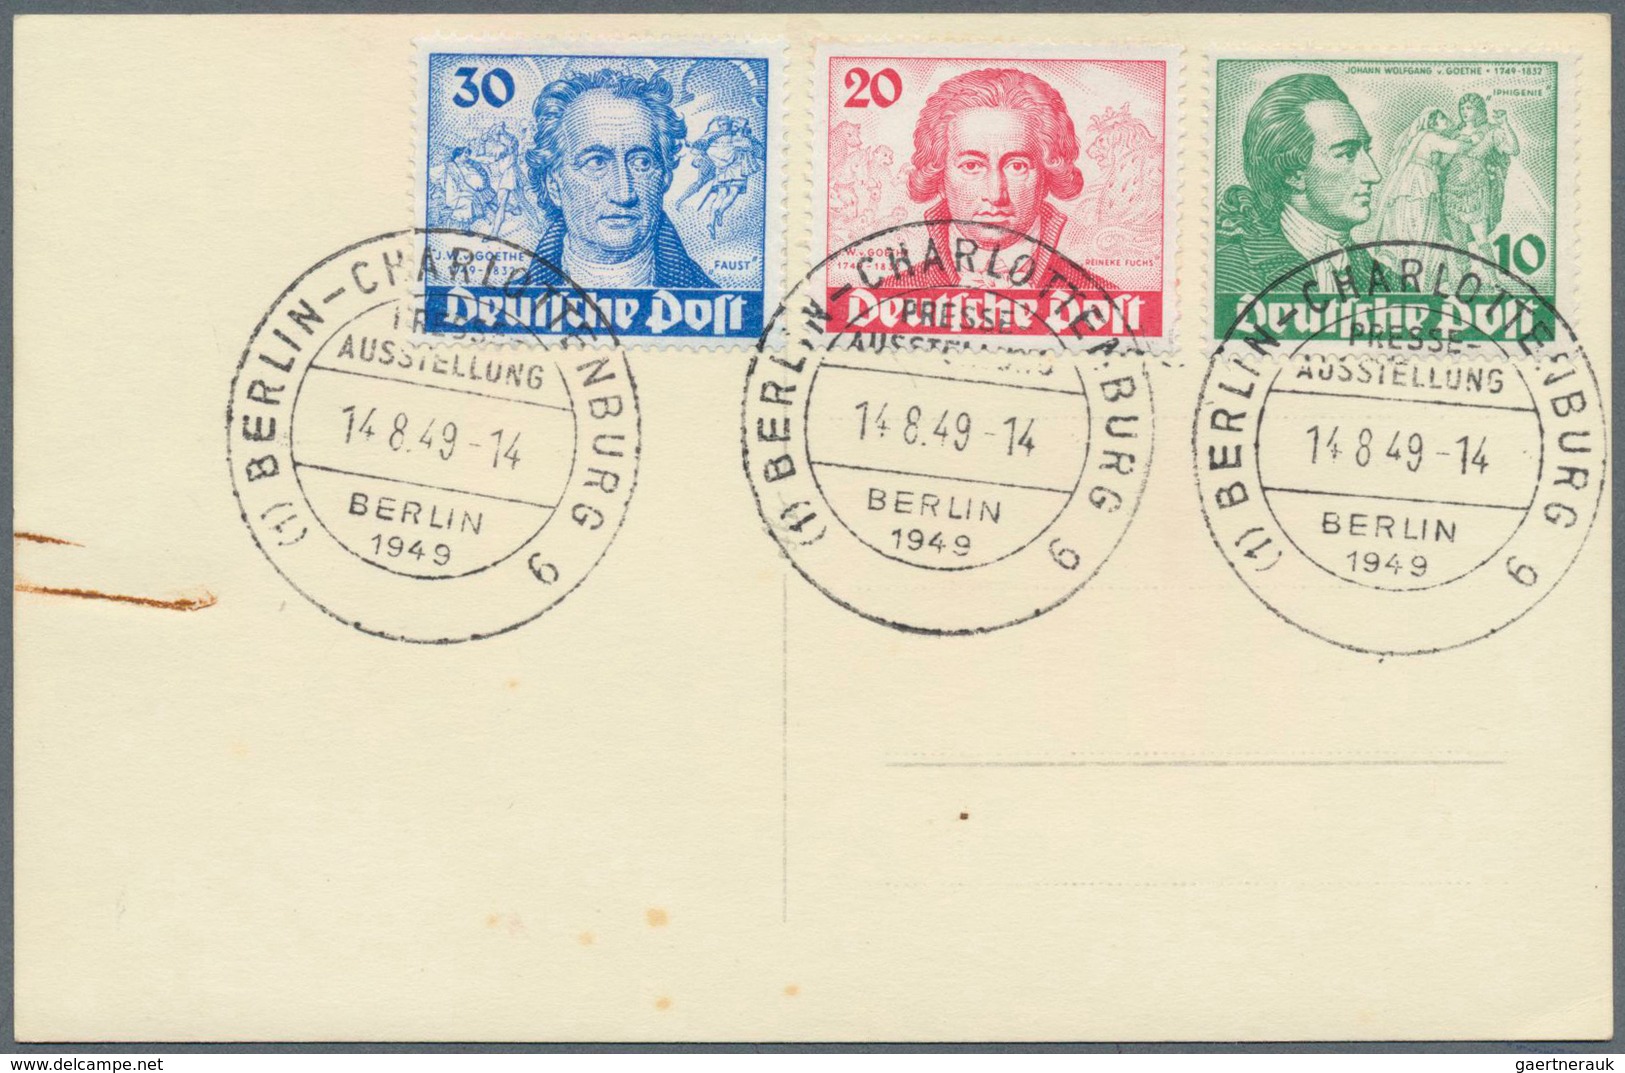 24535 Alle Welt: 1900-1990, drei Kartons mit Briefen und Belegen Deutschland, Europa und Übersee, dabei ne